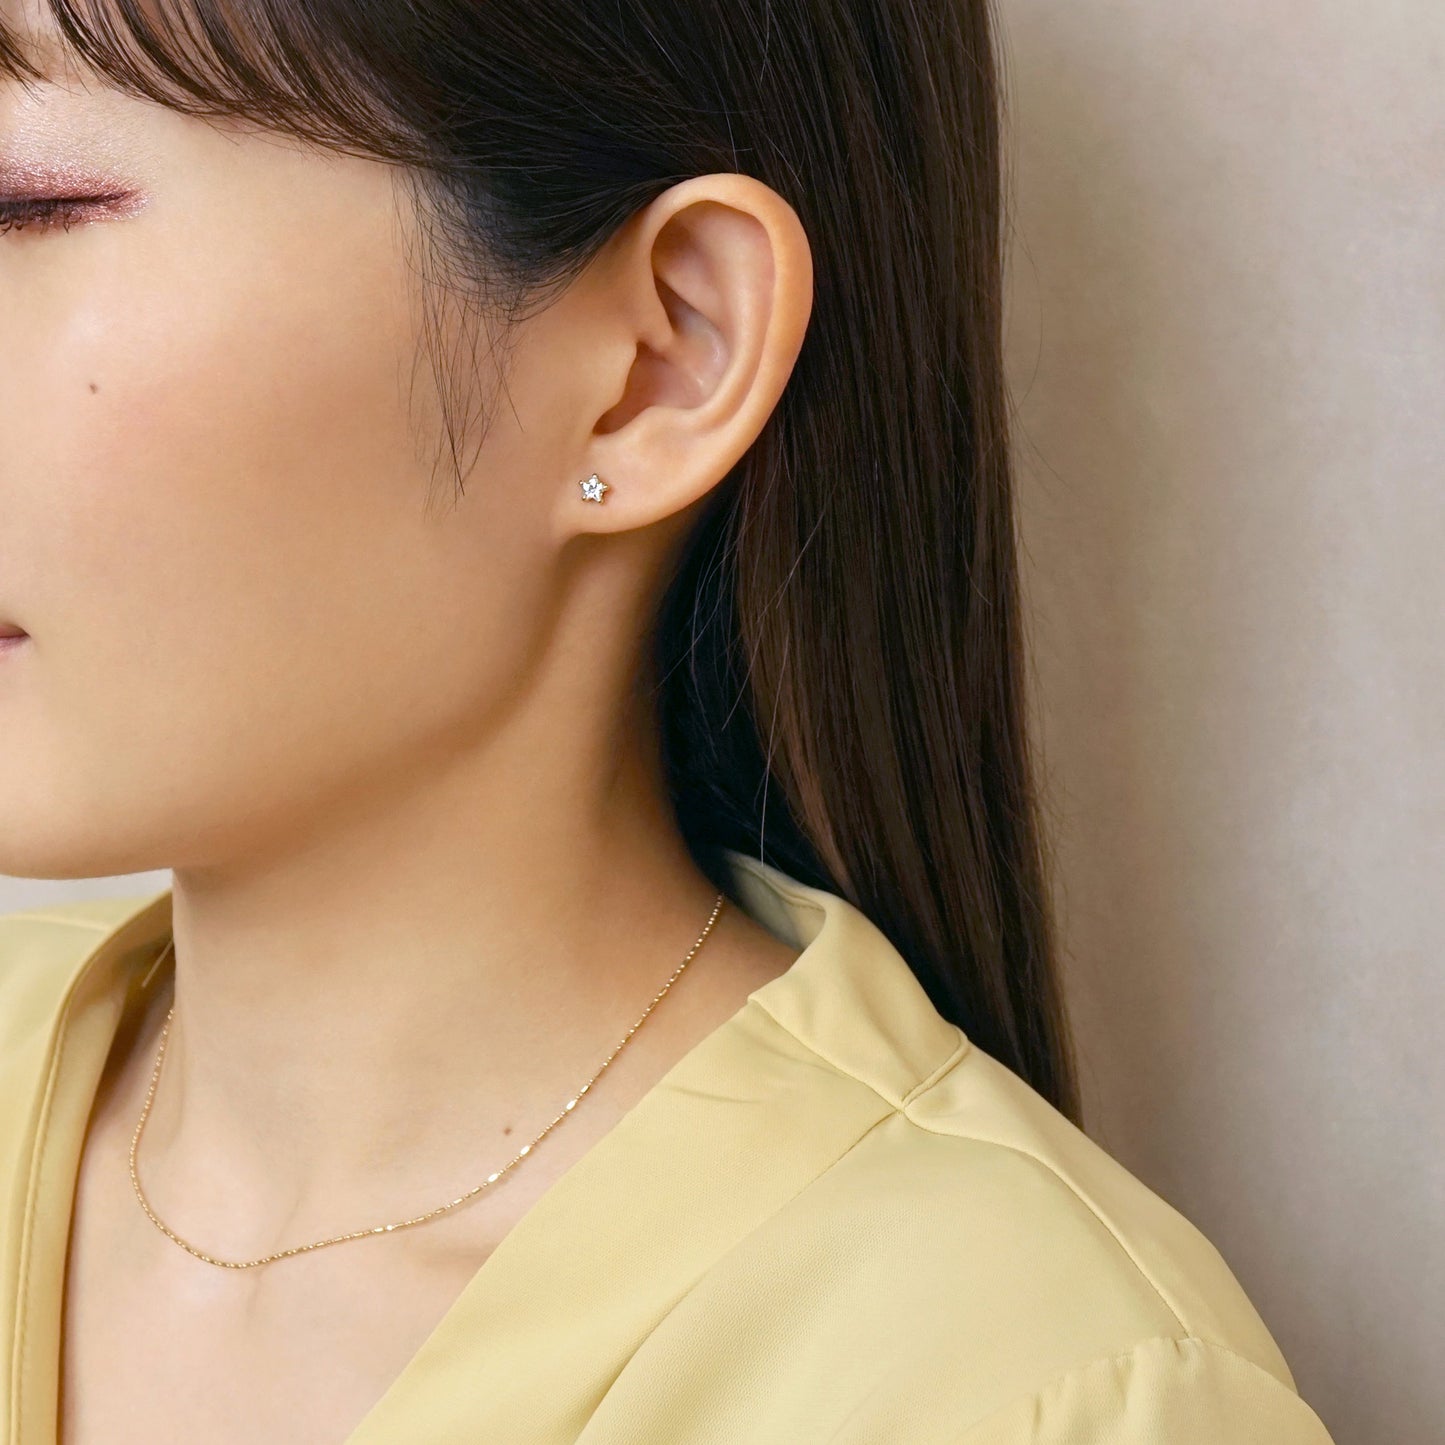 [Second Earrings] 18K Yellow Gold Star Cut Clear Cubic Zirconia Earrings - Model Image